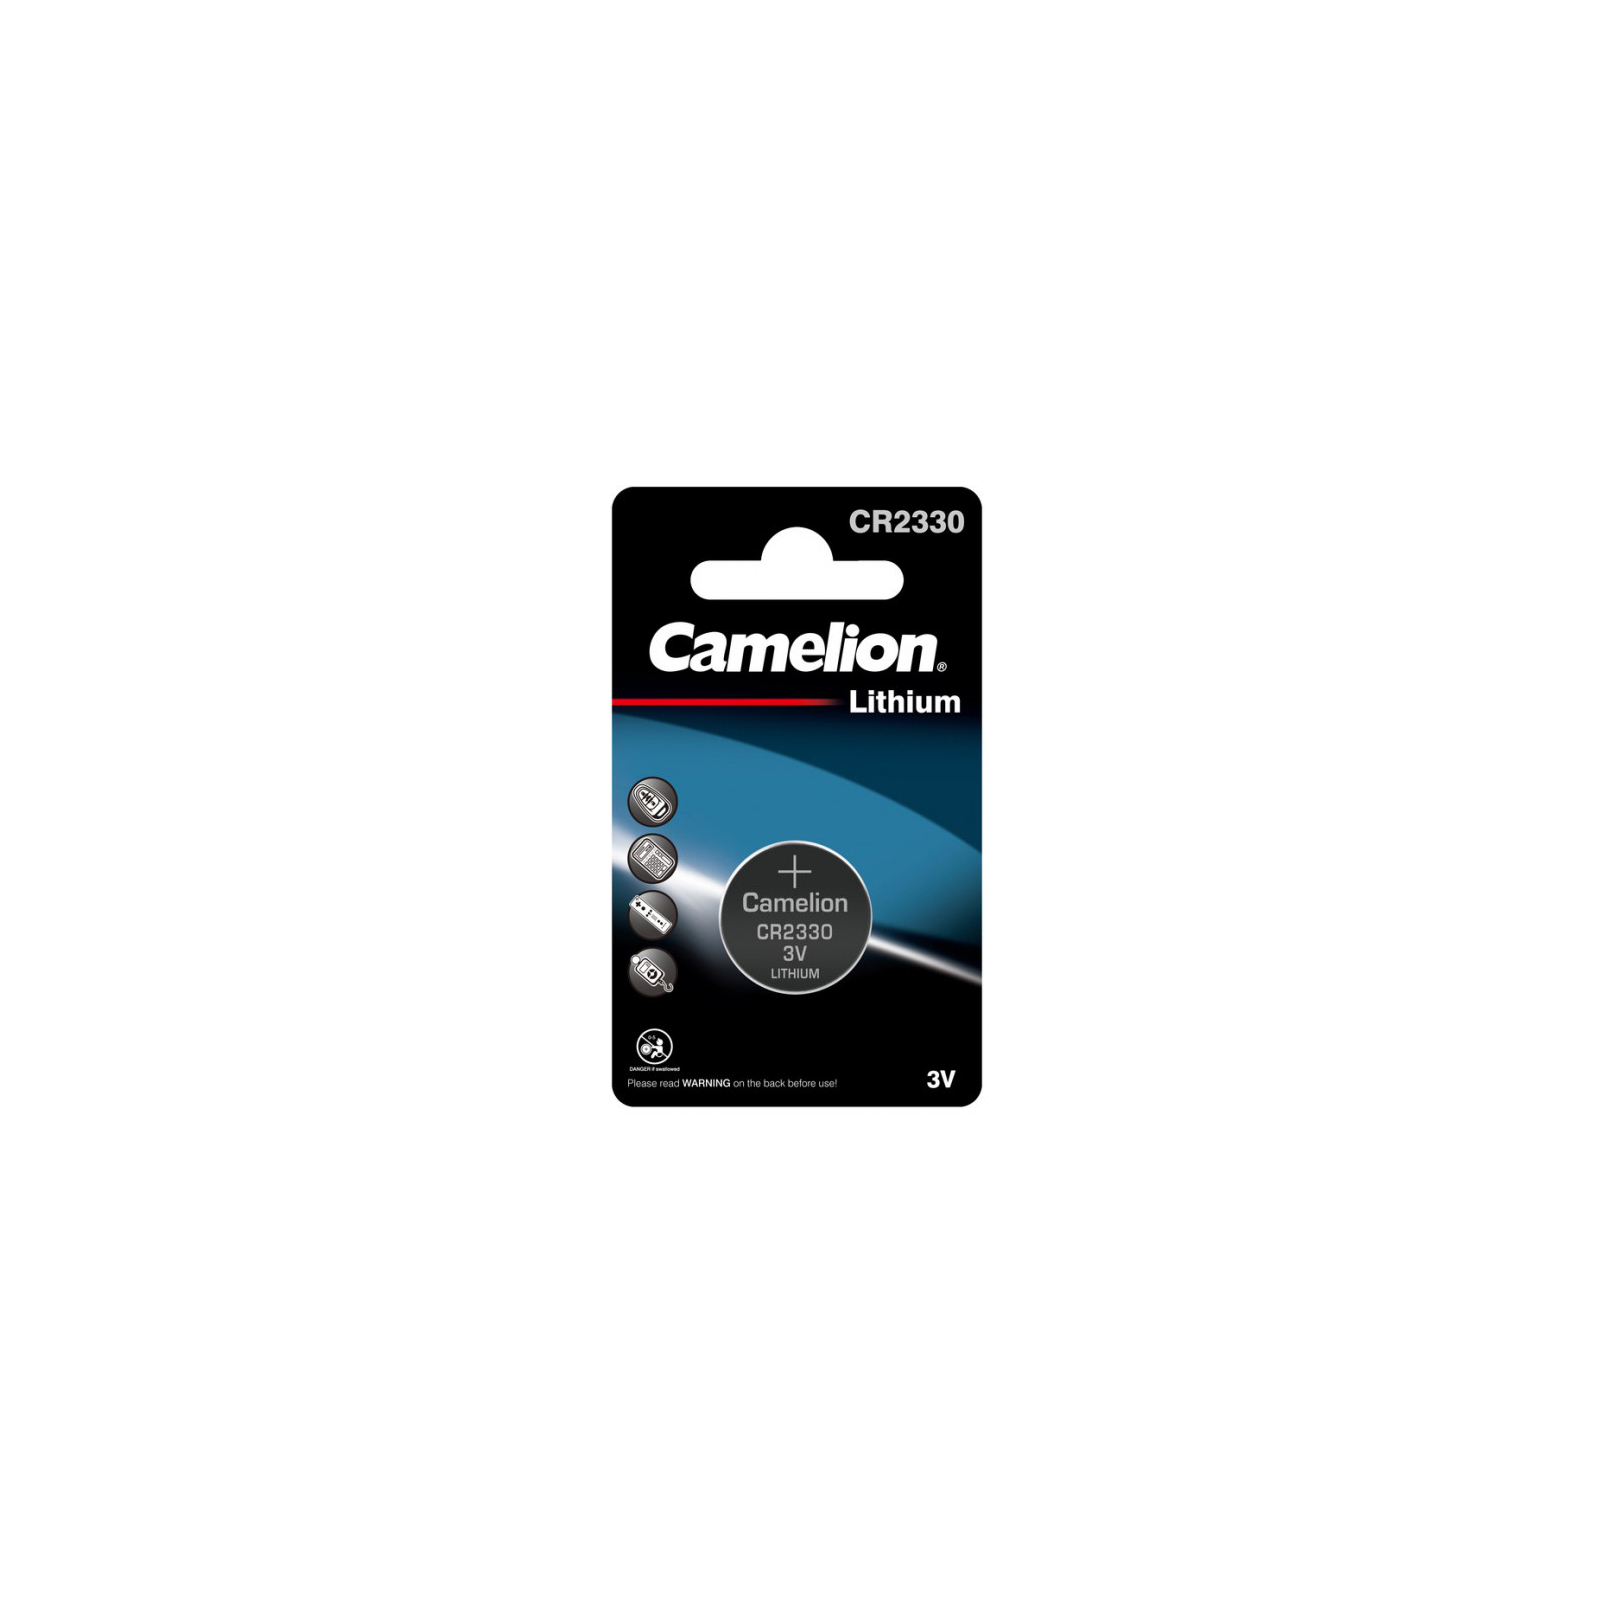 Батарейка CR 2330 Lithium * 1 Camelion (CR2330-BP1)